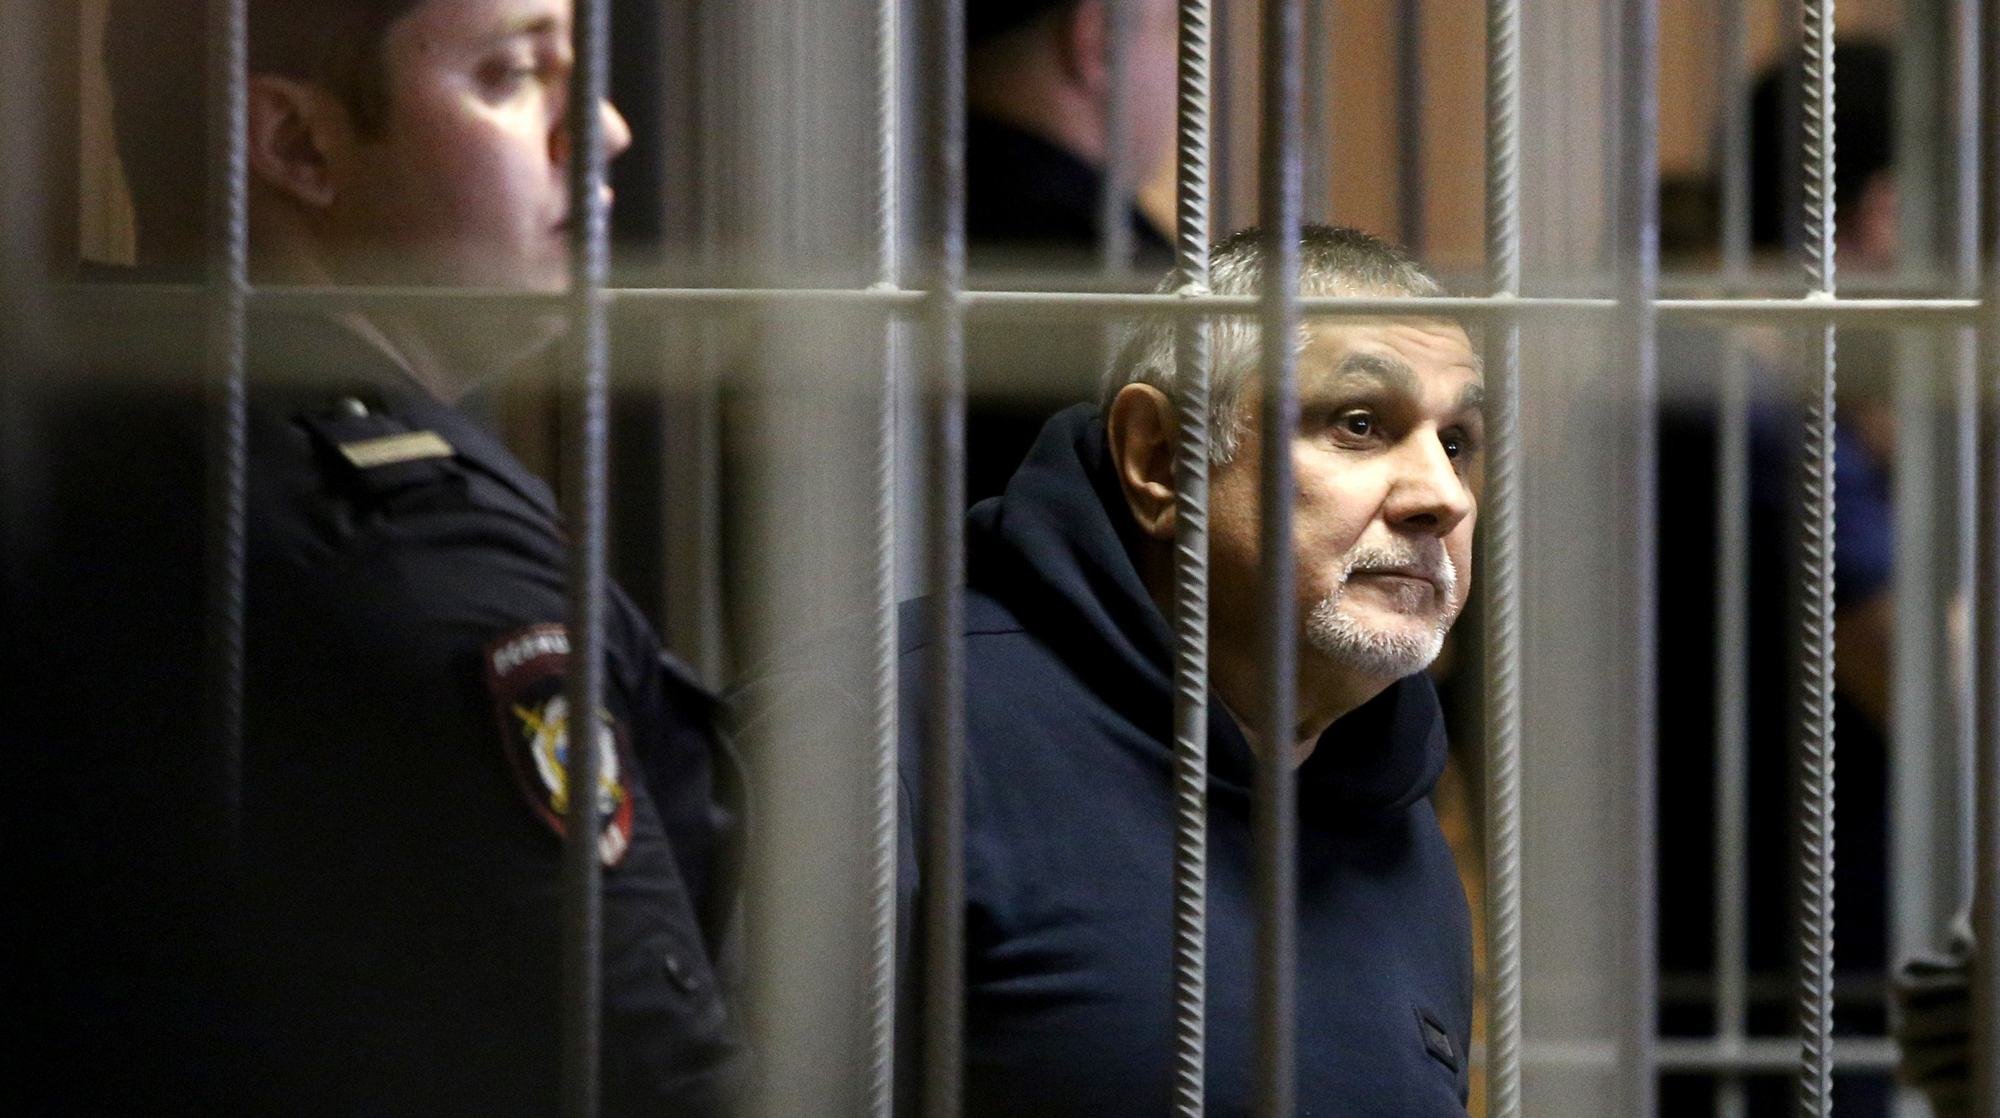 Один из ключевых свидетелей по делу Шакро Молодого сам оказался подозреваемым Фото: © Агентство Москва/Никеричев Андрей